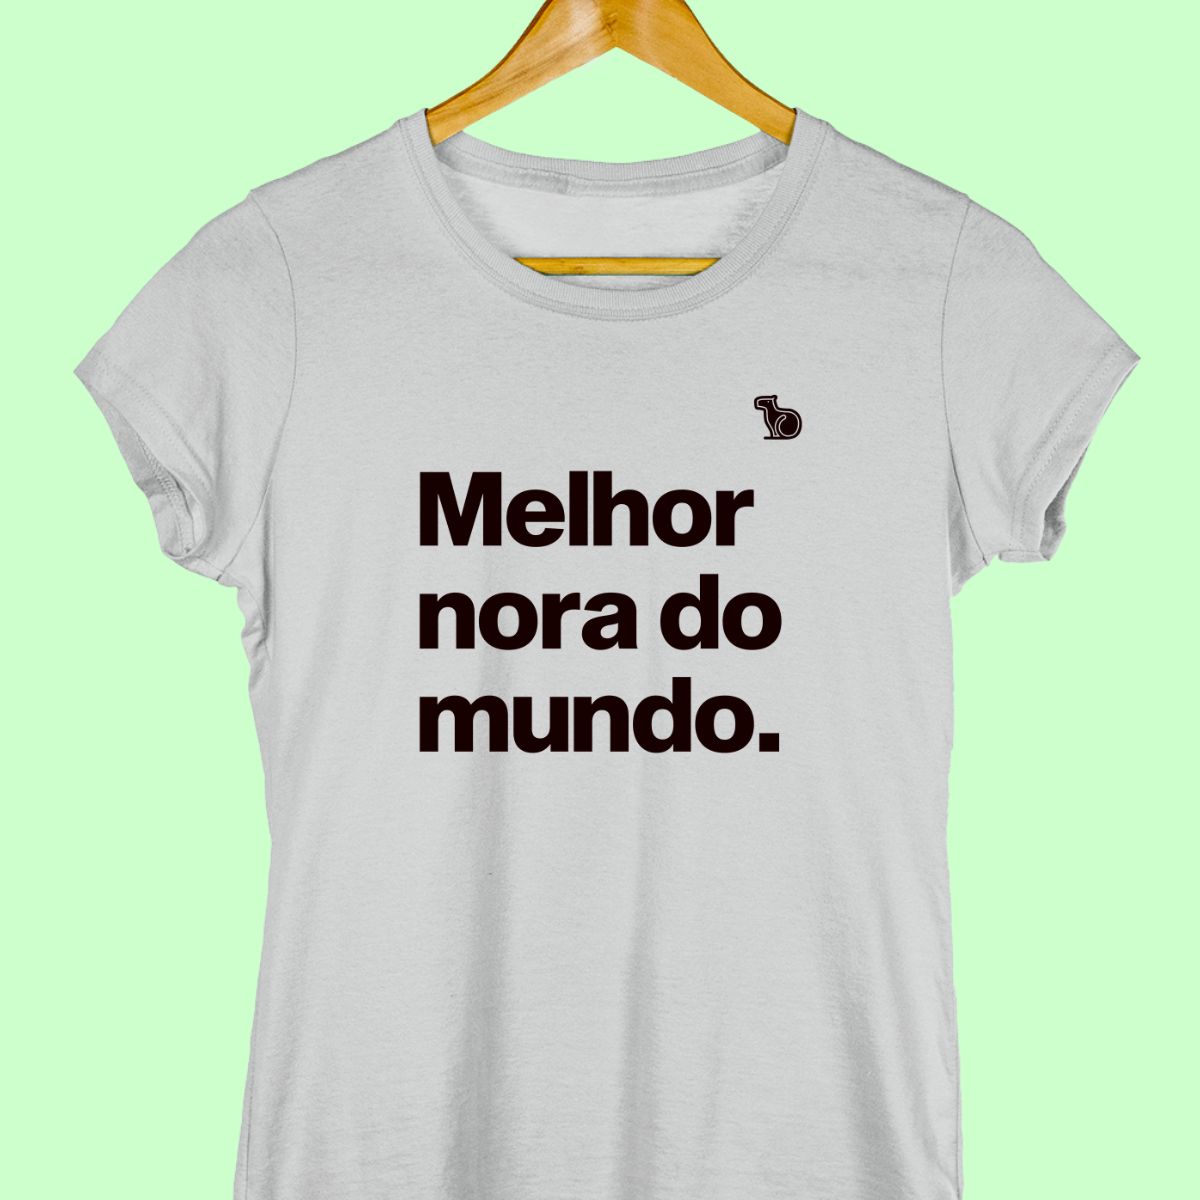 Camiseta com a frase "Melhor nora do mundo." feminina cinza.